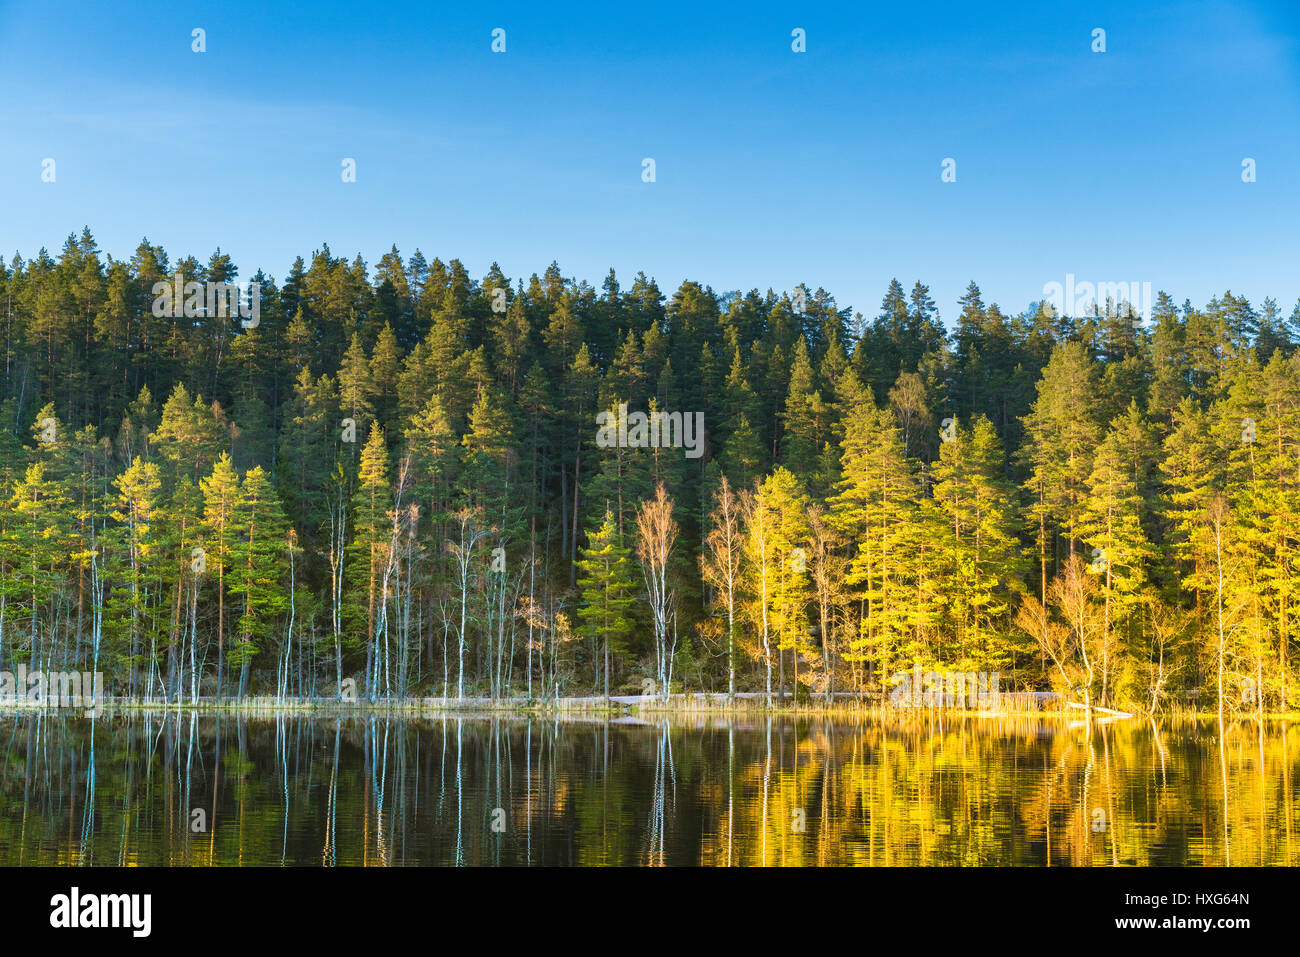 Vista de un bosque de pino y abedul escandinavo y el lago con la cálida luz del atardecer muertos a tiros cerca de la frontera finlandesa sueca en Finlandia y Suecia Foto de stock